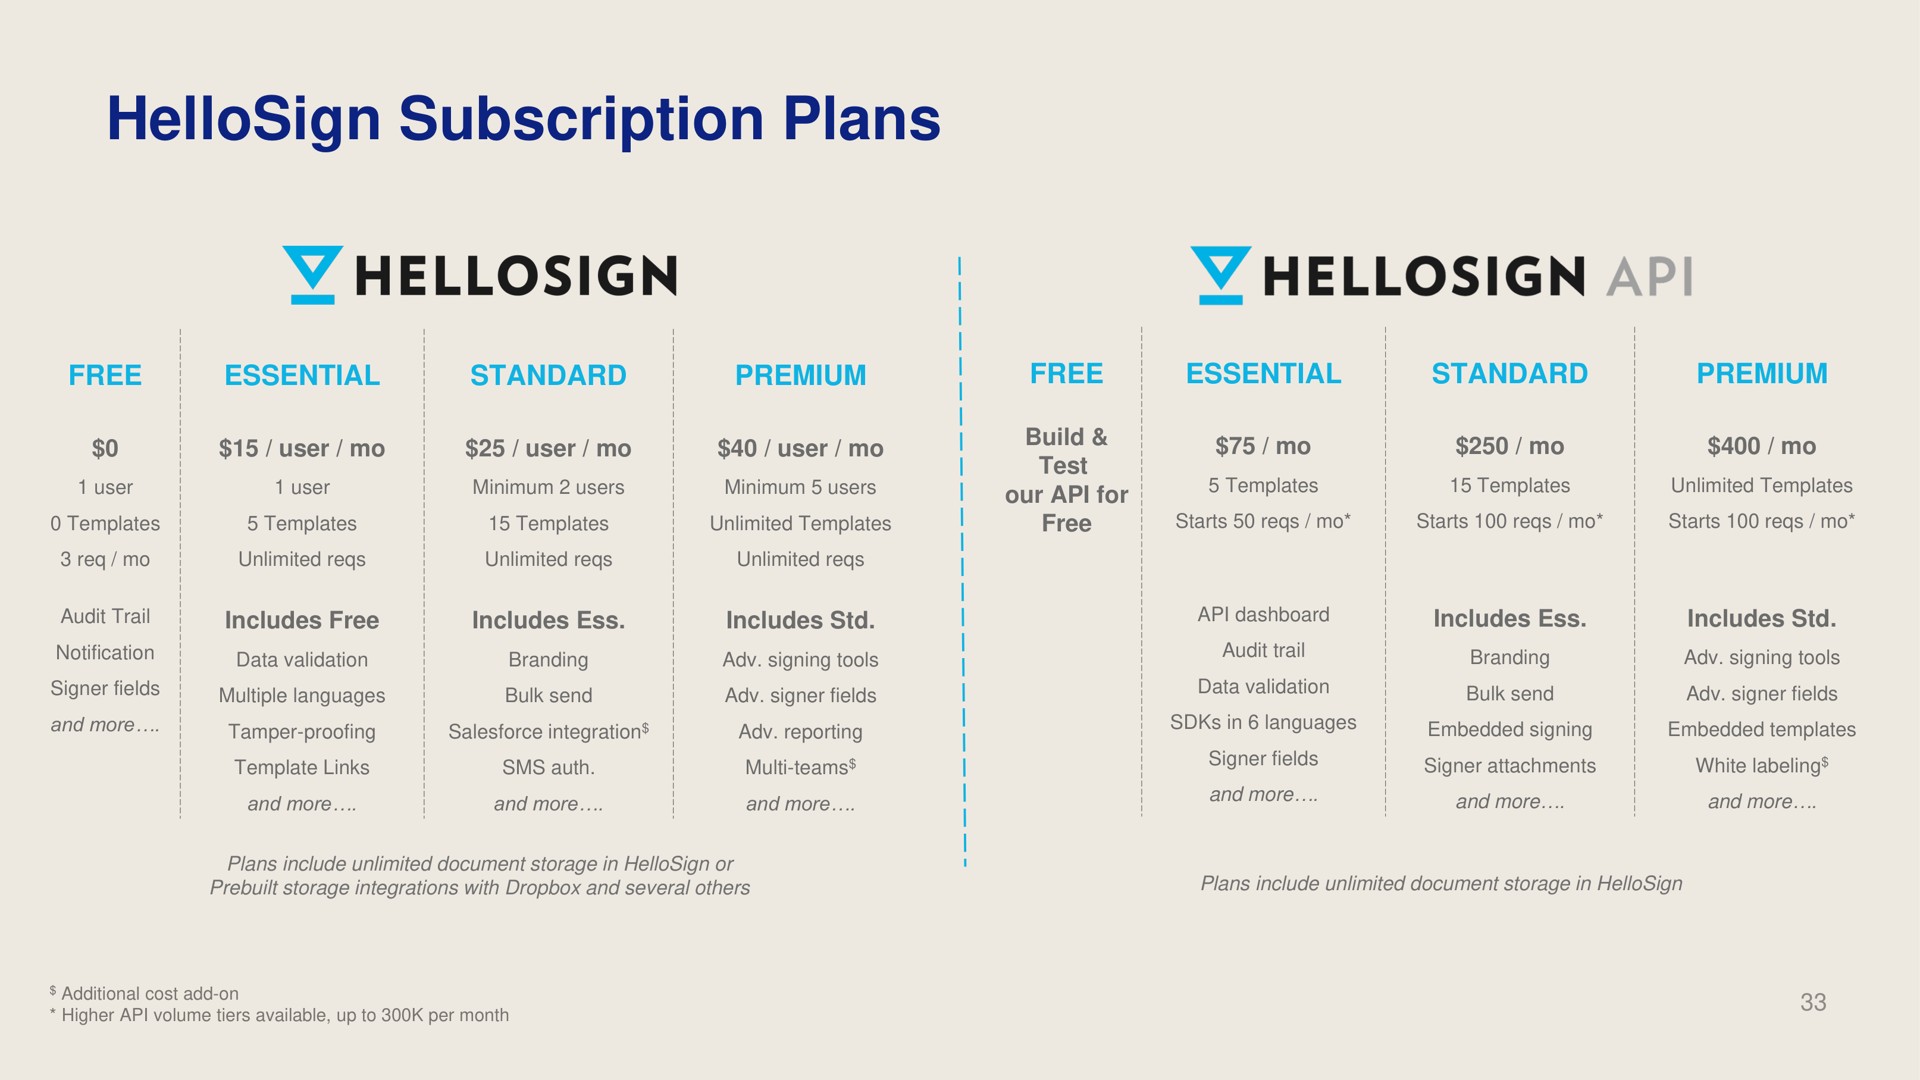 subscription plans | Dropbox